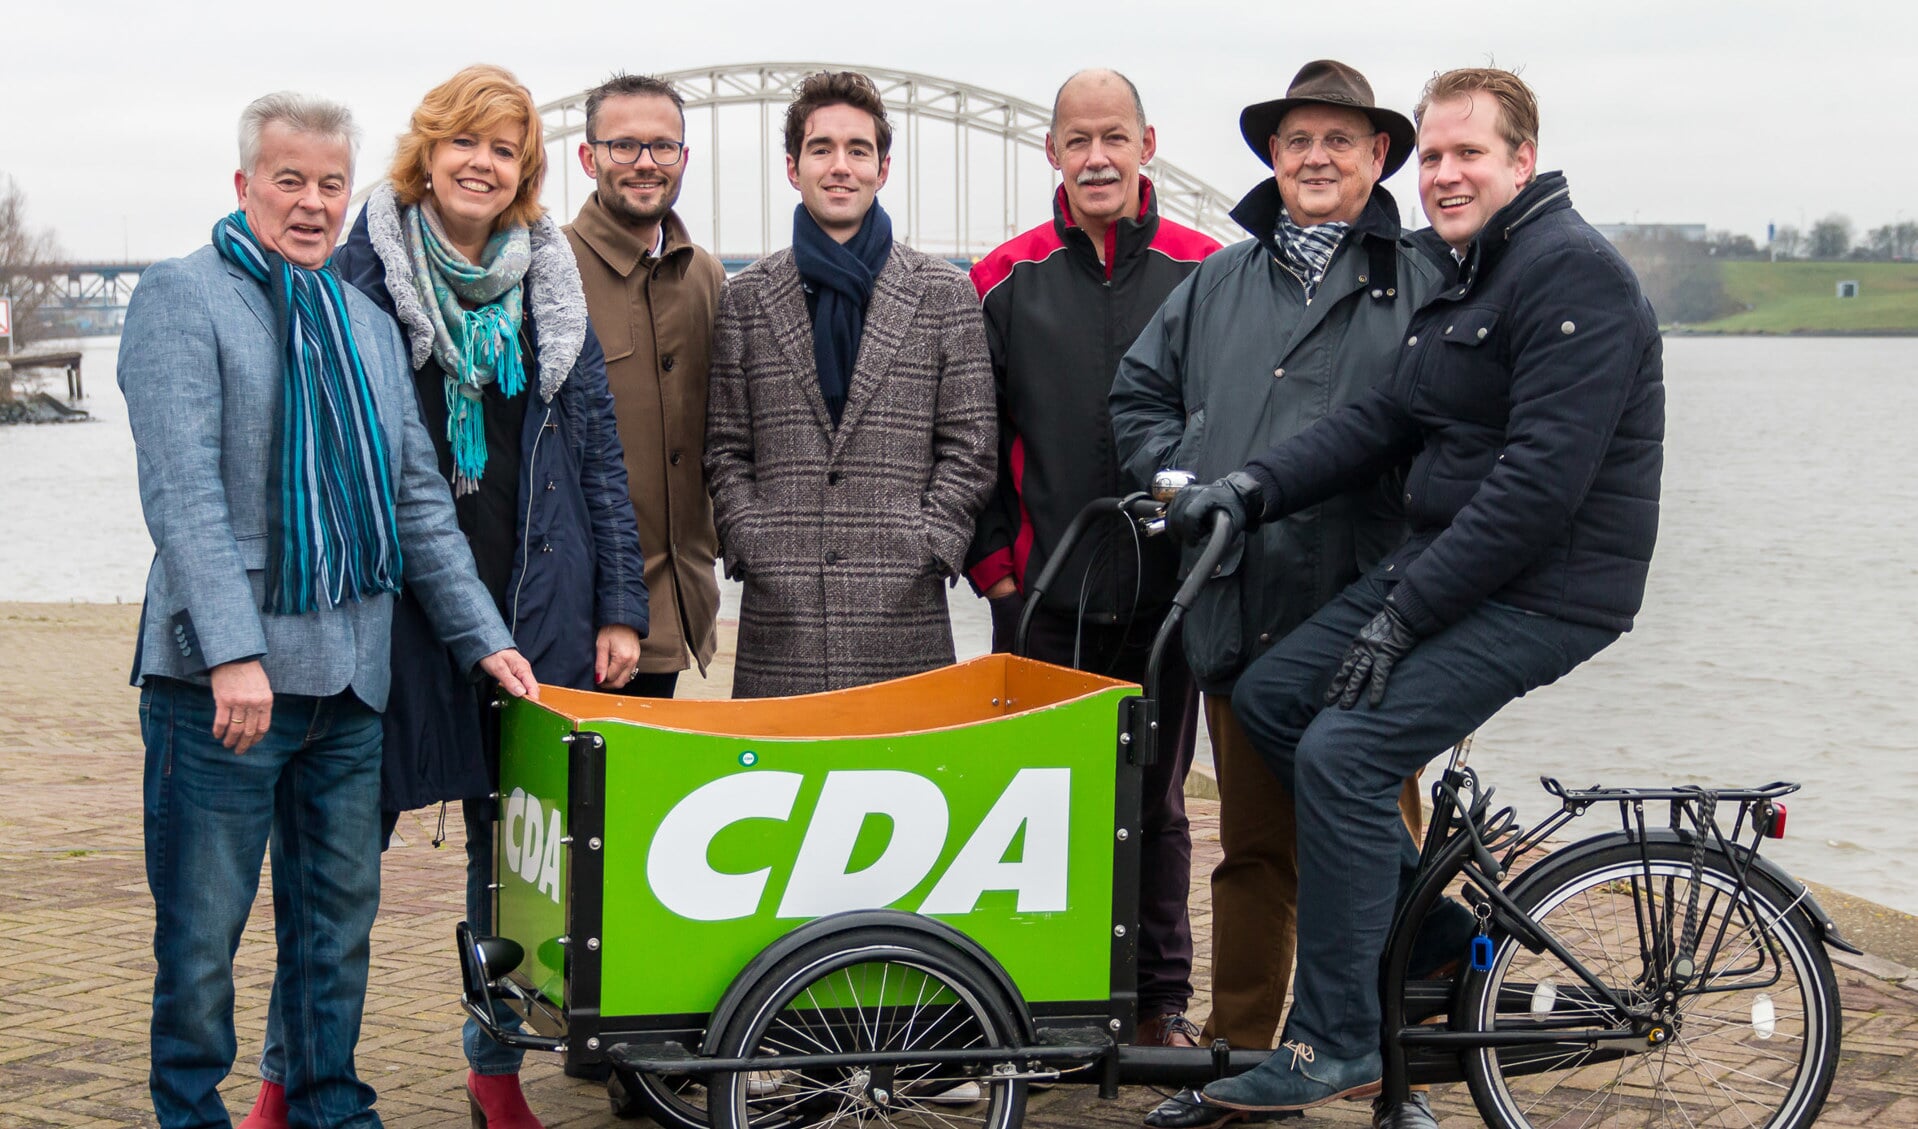 • Enkele CDA-kandidaten, met v.l.n.r.: Jan de Kok, Margreet de Deugd - Bos, Arjan Kraijo, André Groenendijk, Hans van Ommen, Arie van ’t Zelfde, Arco Strop.
